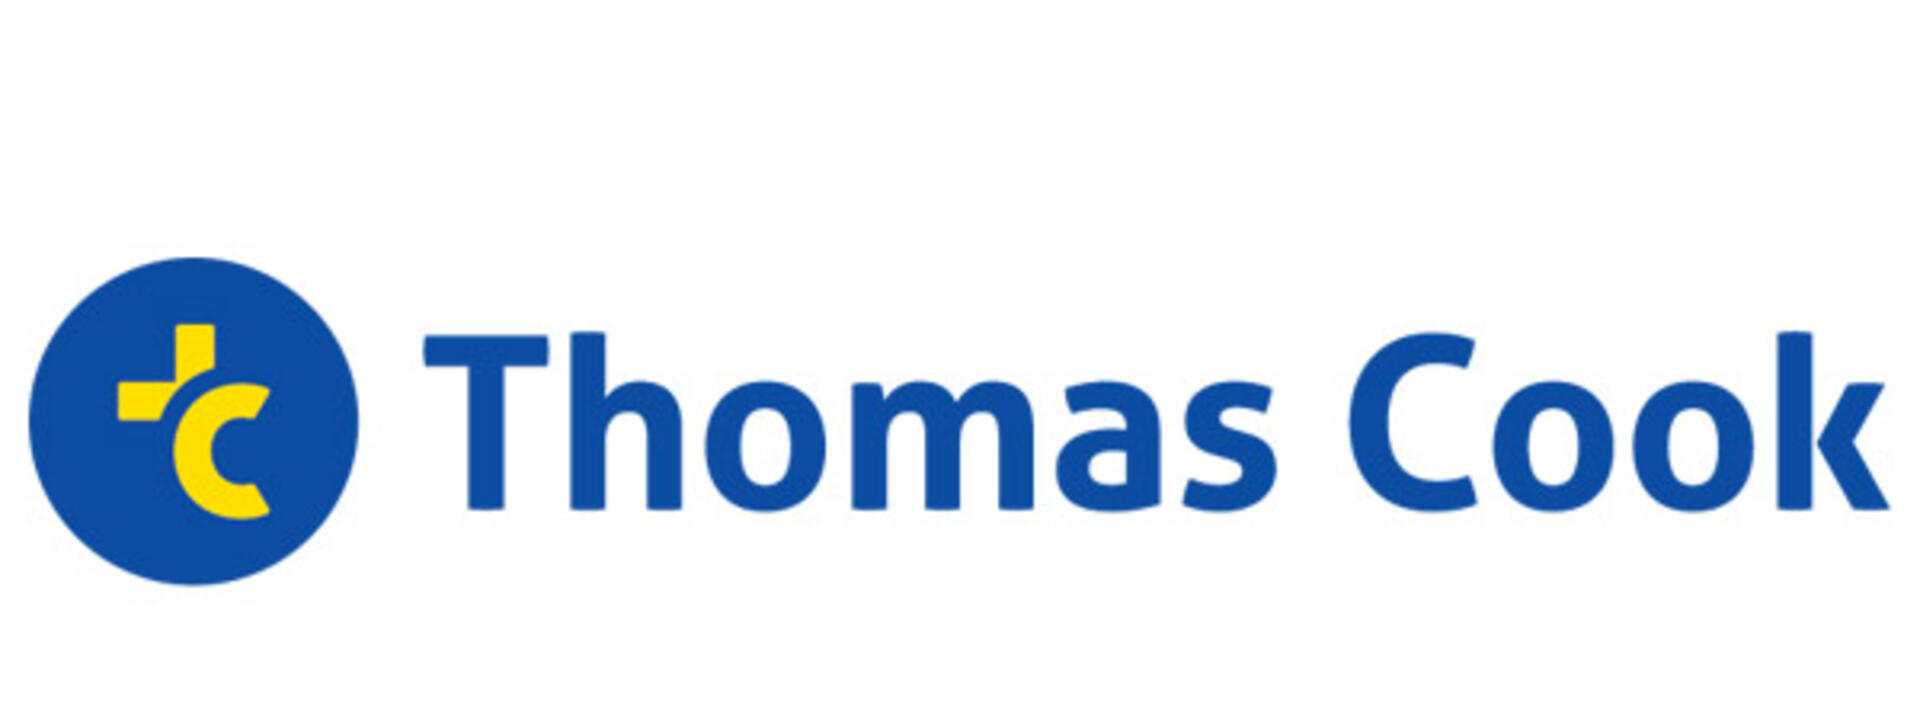 thomas-cook-logo_0.jpg